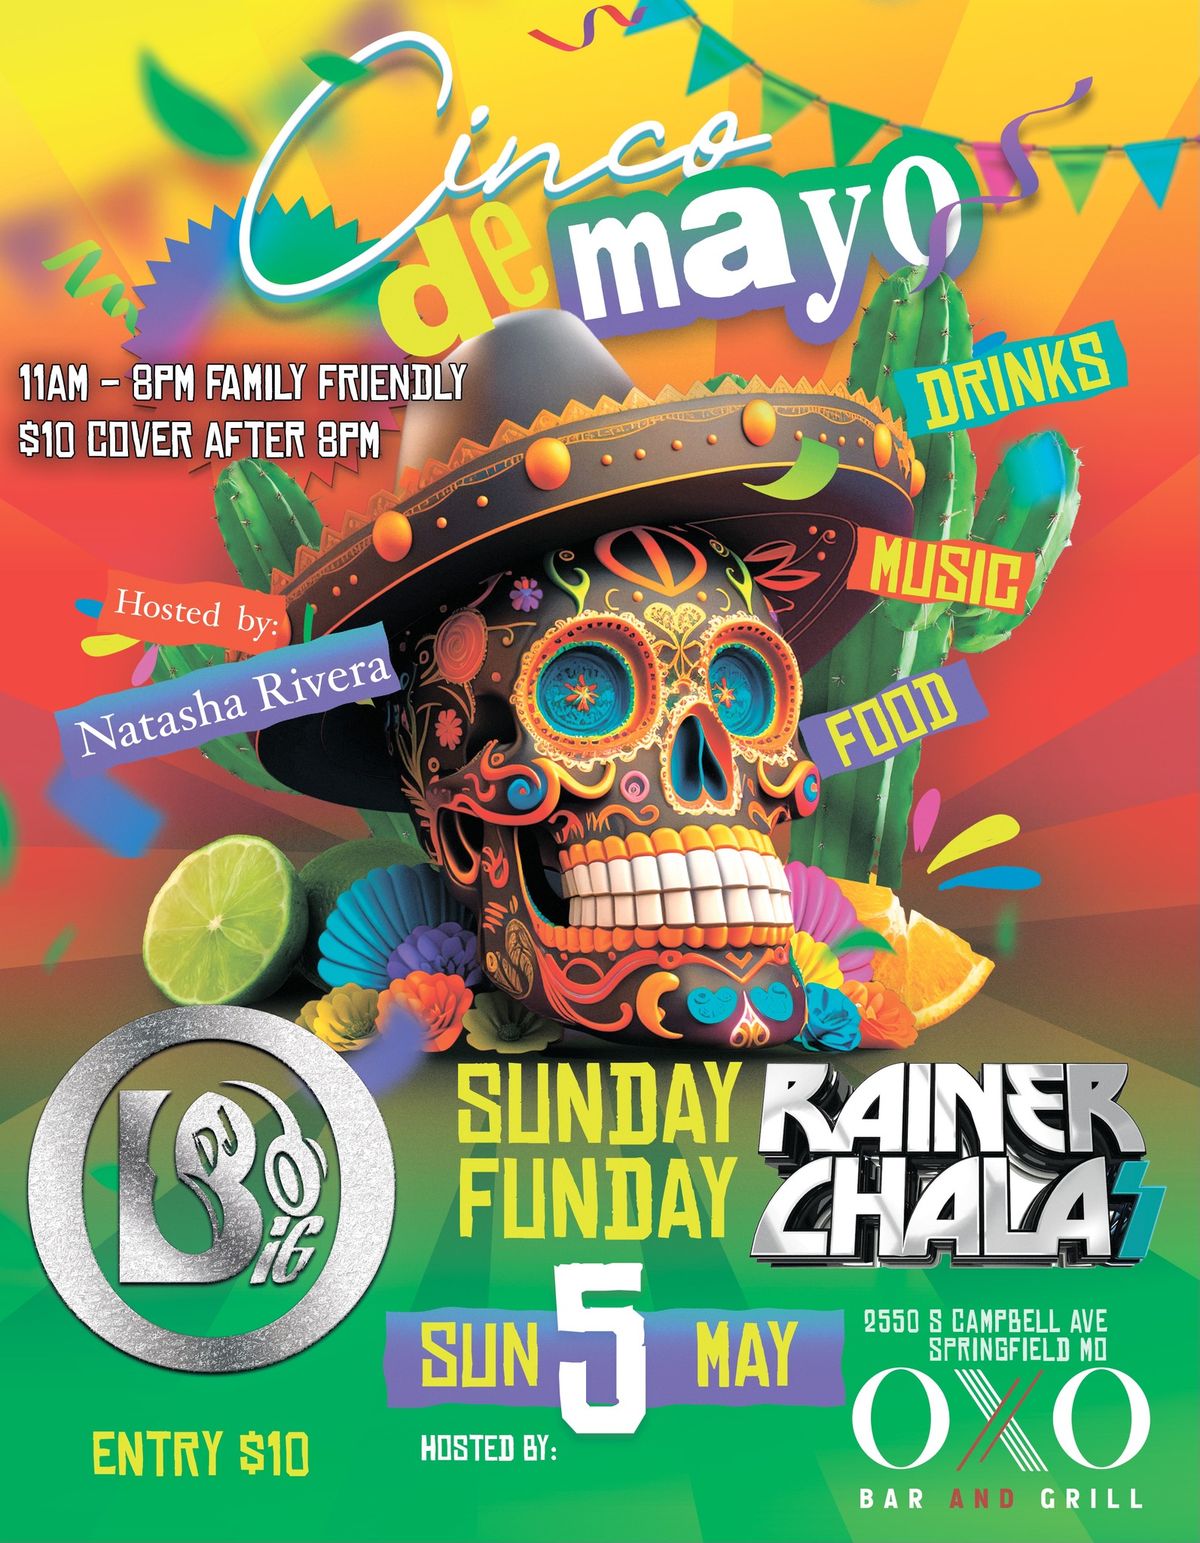 5 De Mayo @ OXO | Sunday Funday!